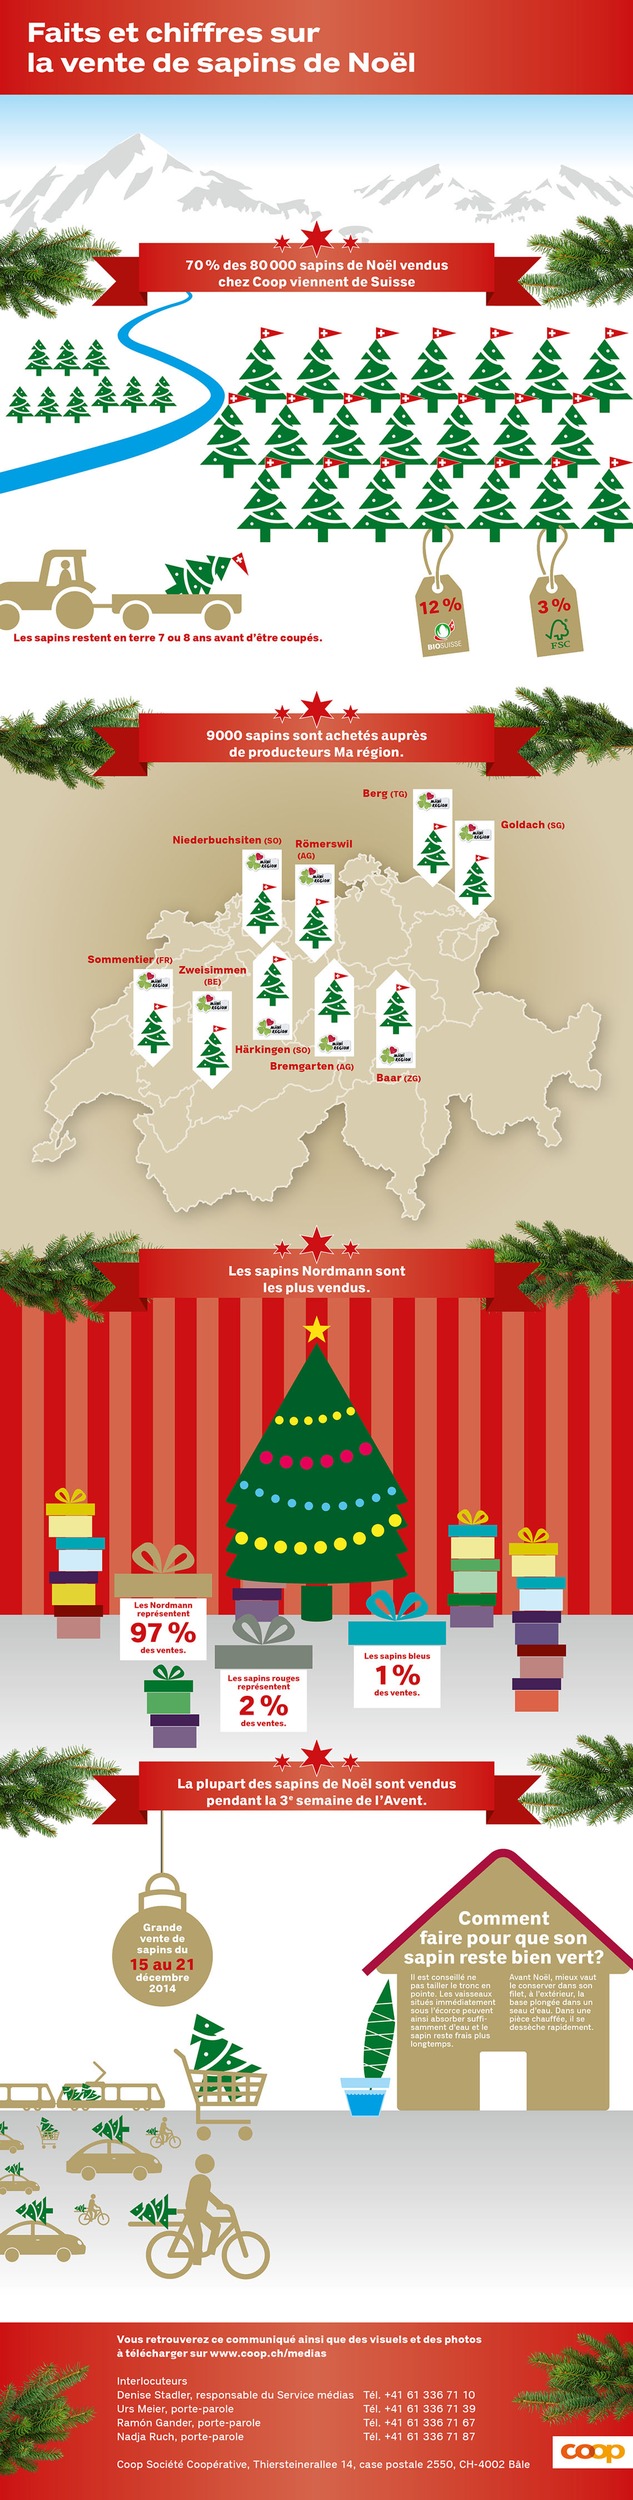 7 sapins de Noël sur 10 proviennent de Suisse / Des paroles aux actes n° 300: Coop mise sur des sapins de Noël suisses